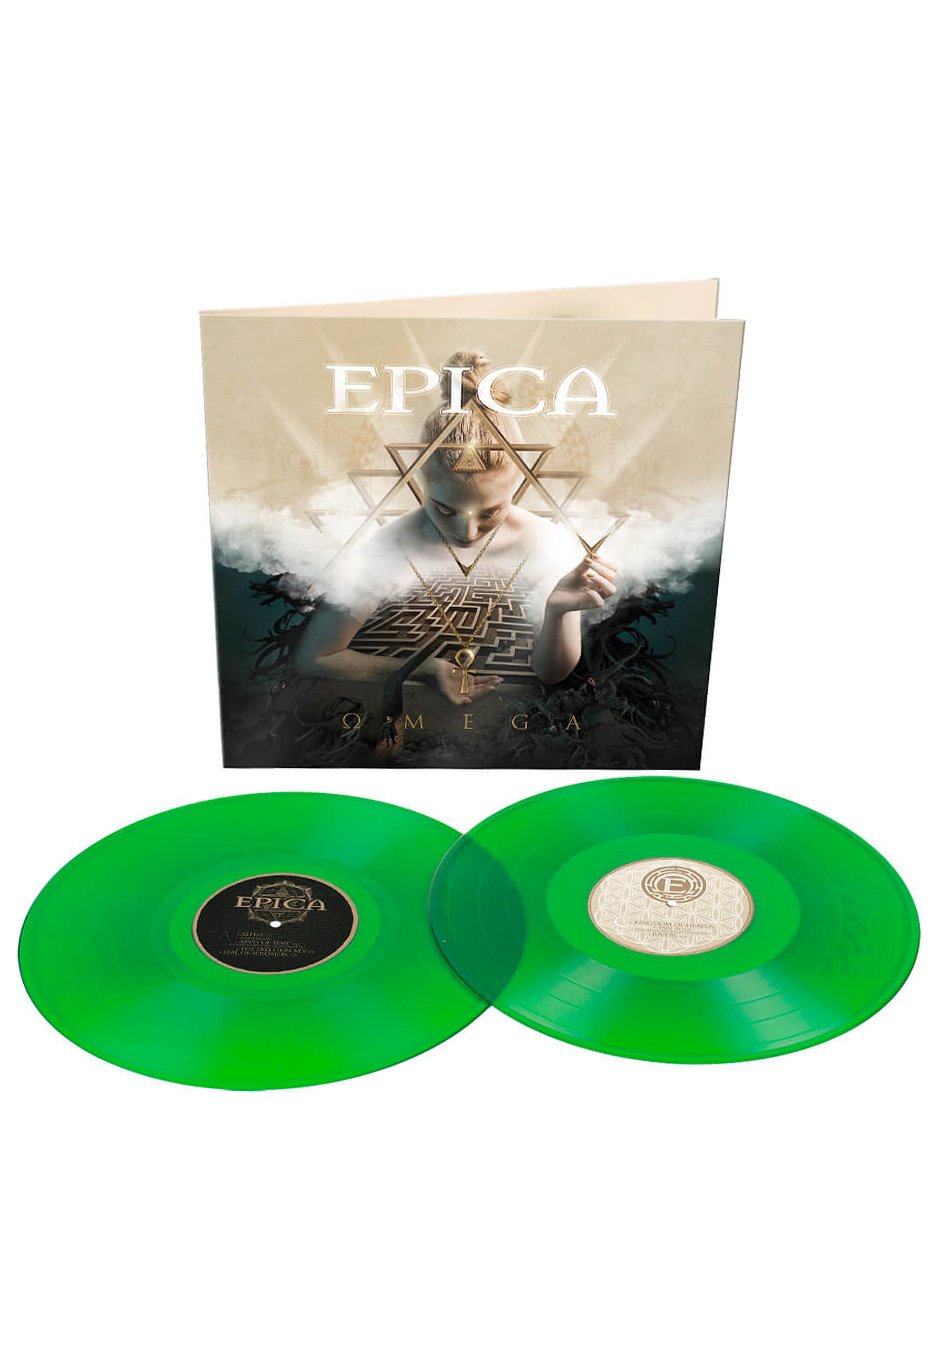 Epica - Omega Ltd. Green - Colored 2 Vinyl